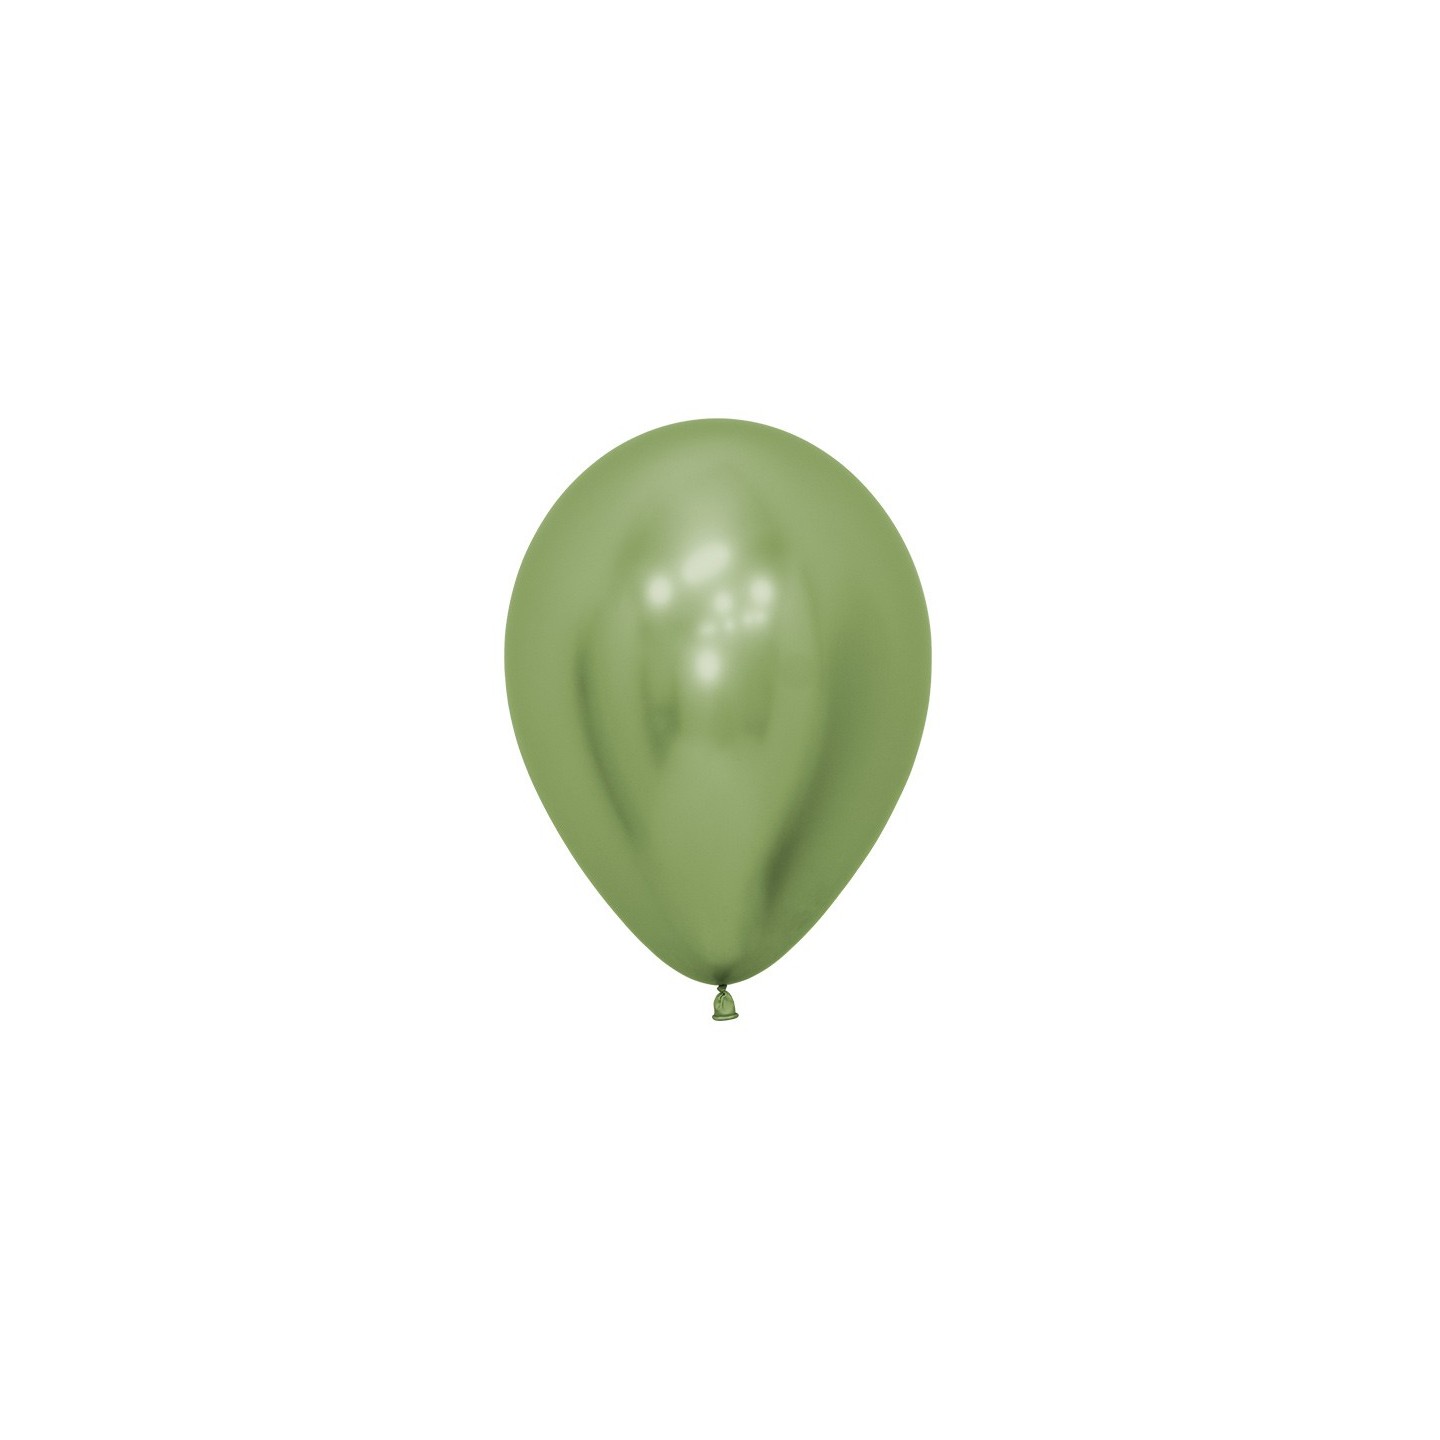 sempertex ballonnen reflex fuchsia chrome groen